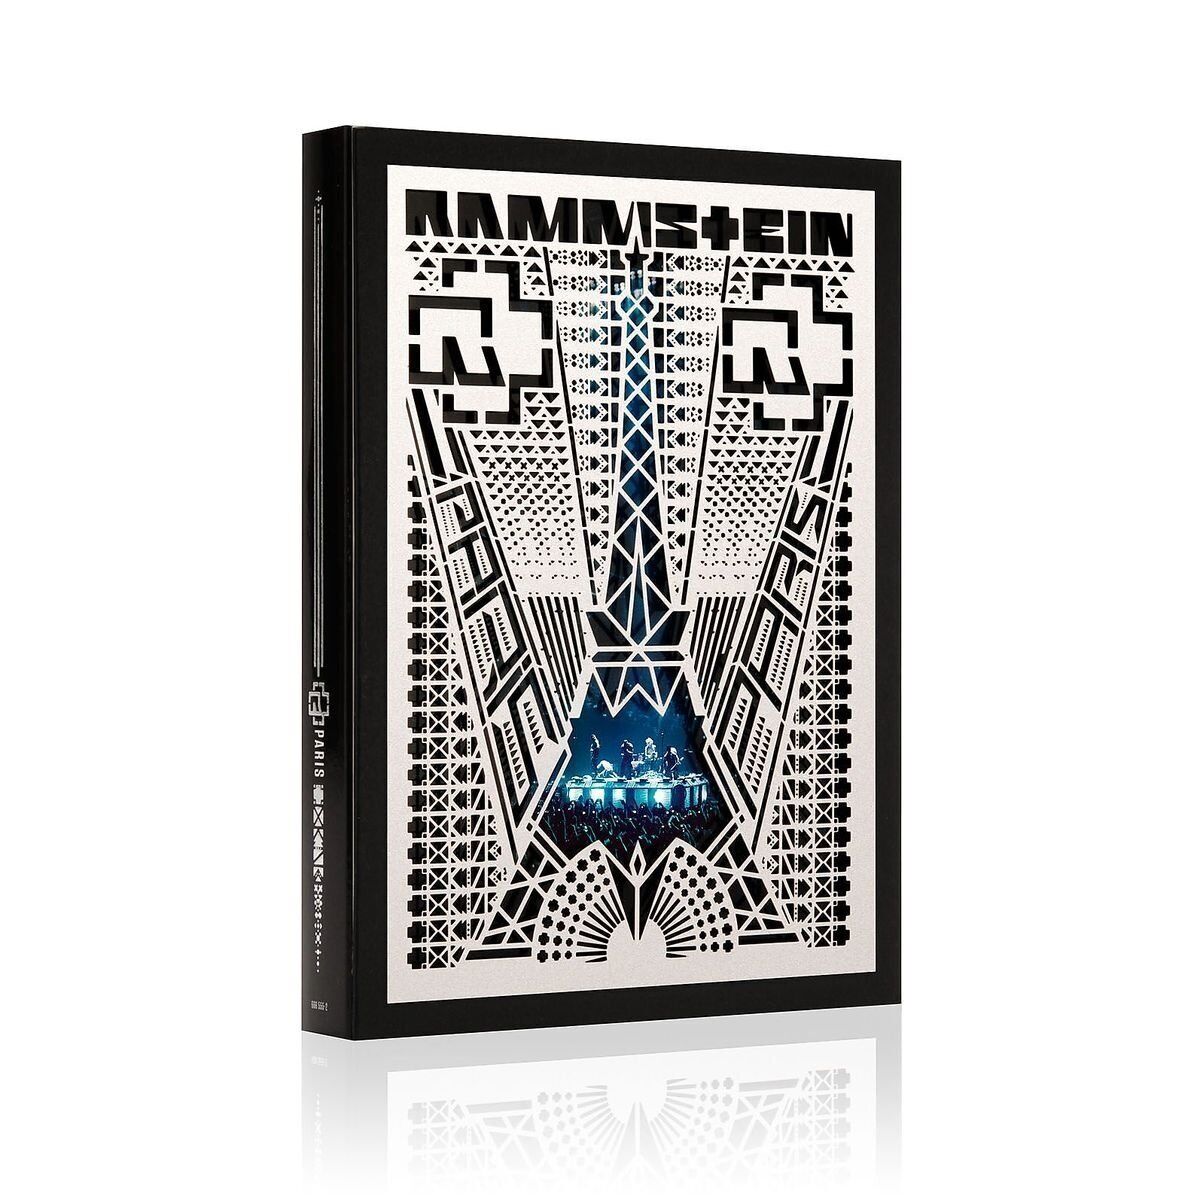 Rammstein Rammstein: Paris (Ltd.\